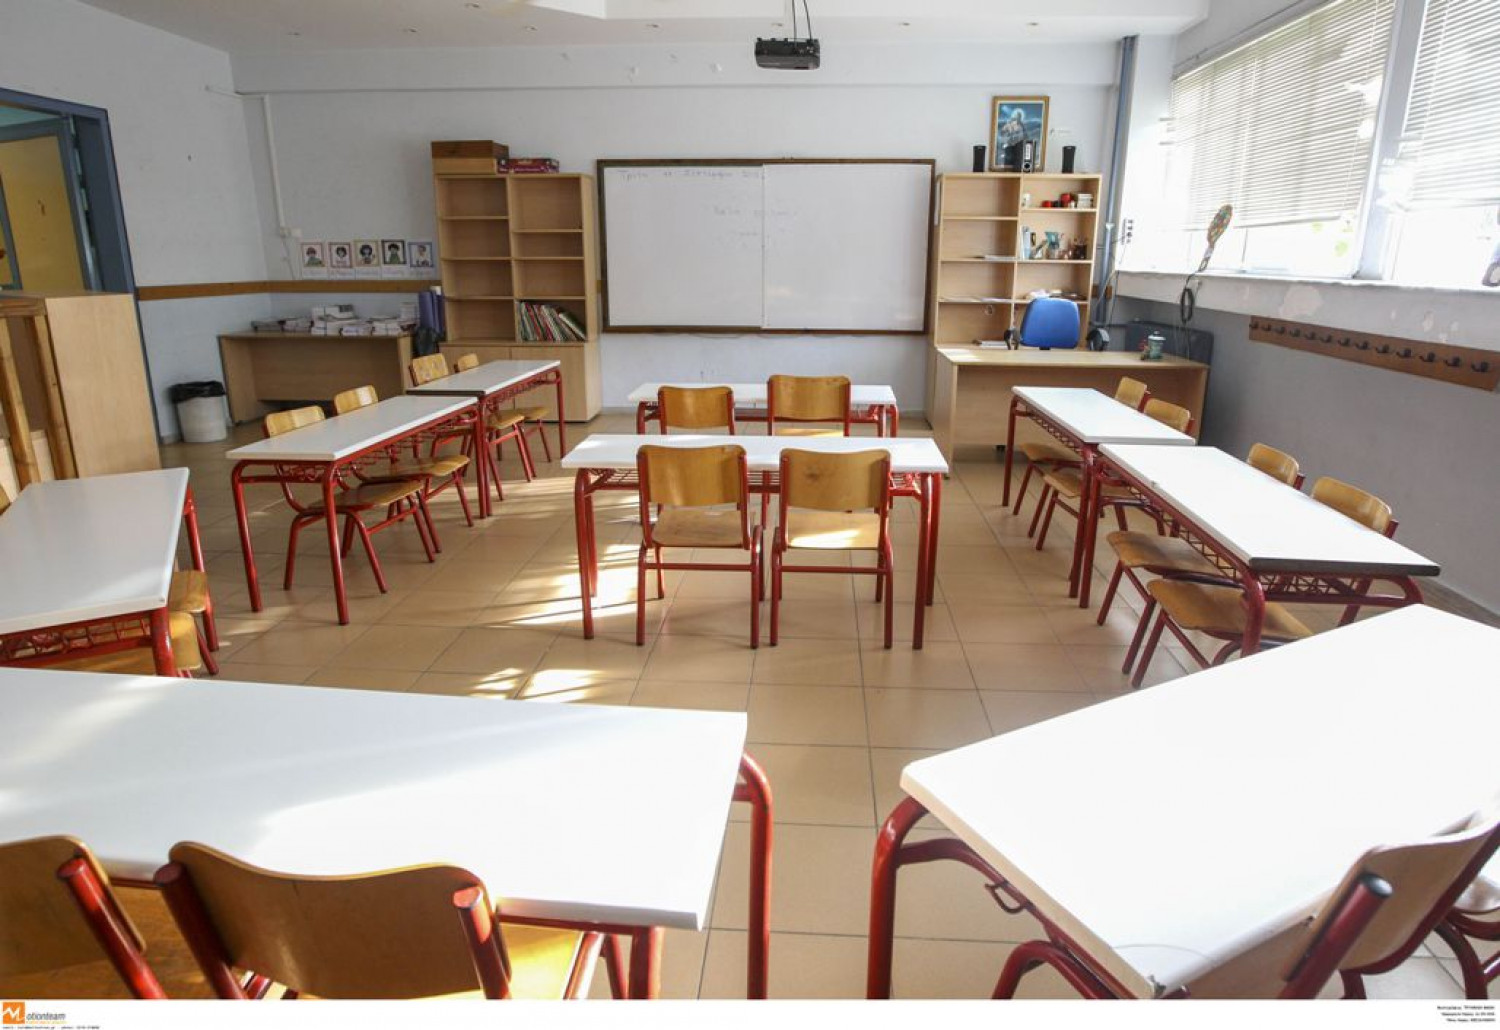 Γαύδος: Γιατί αποφάσισε να εγκαταλείψει το σχολείο μετά τον αγιασμό η δασκάλα | Ειδήσεις